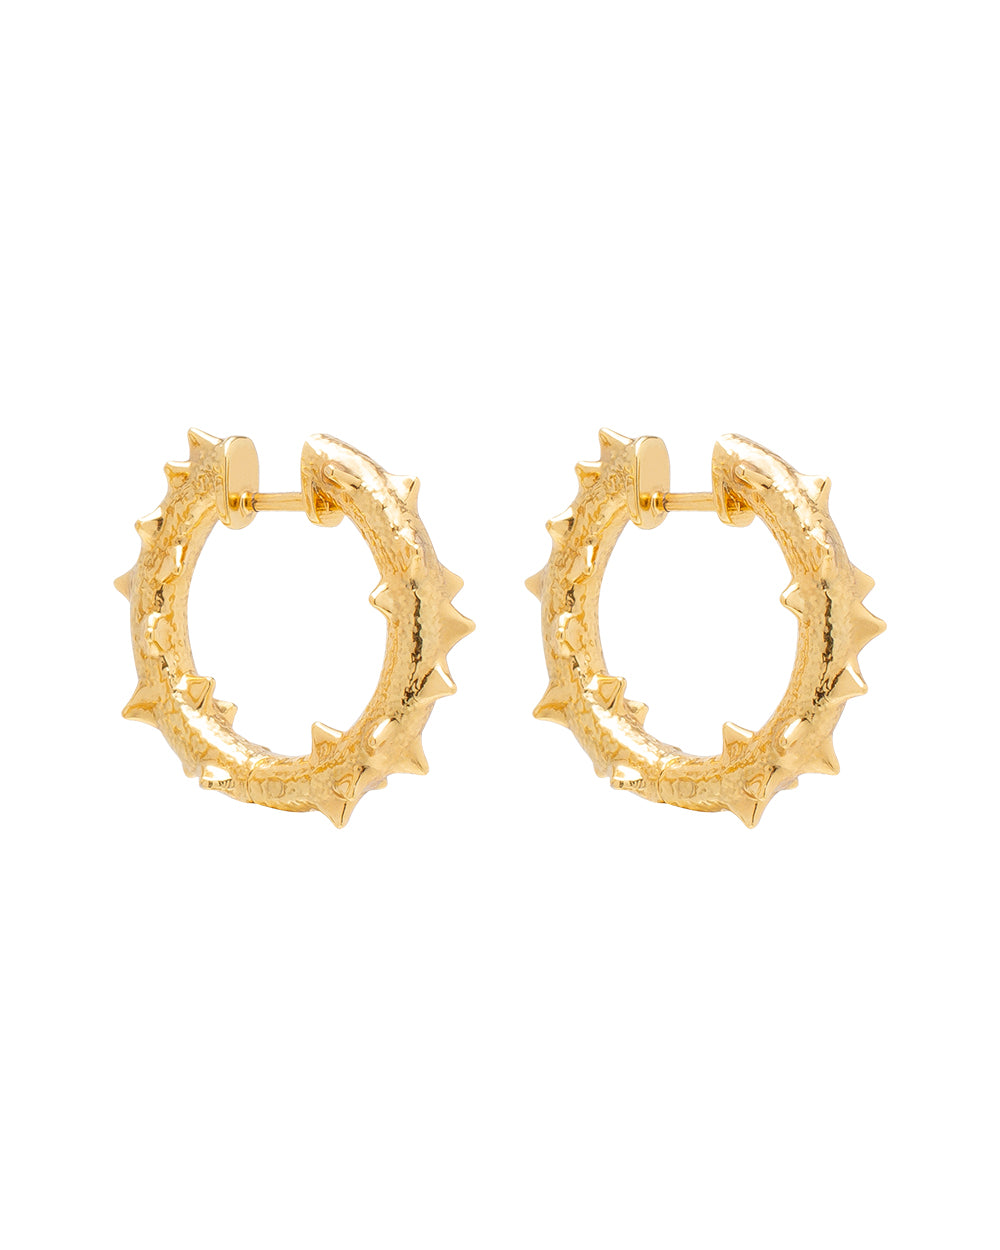 K15 Каштанові сережки-кільця з латуні покриті 24 каратною позолотою / діаметр 20 мм 